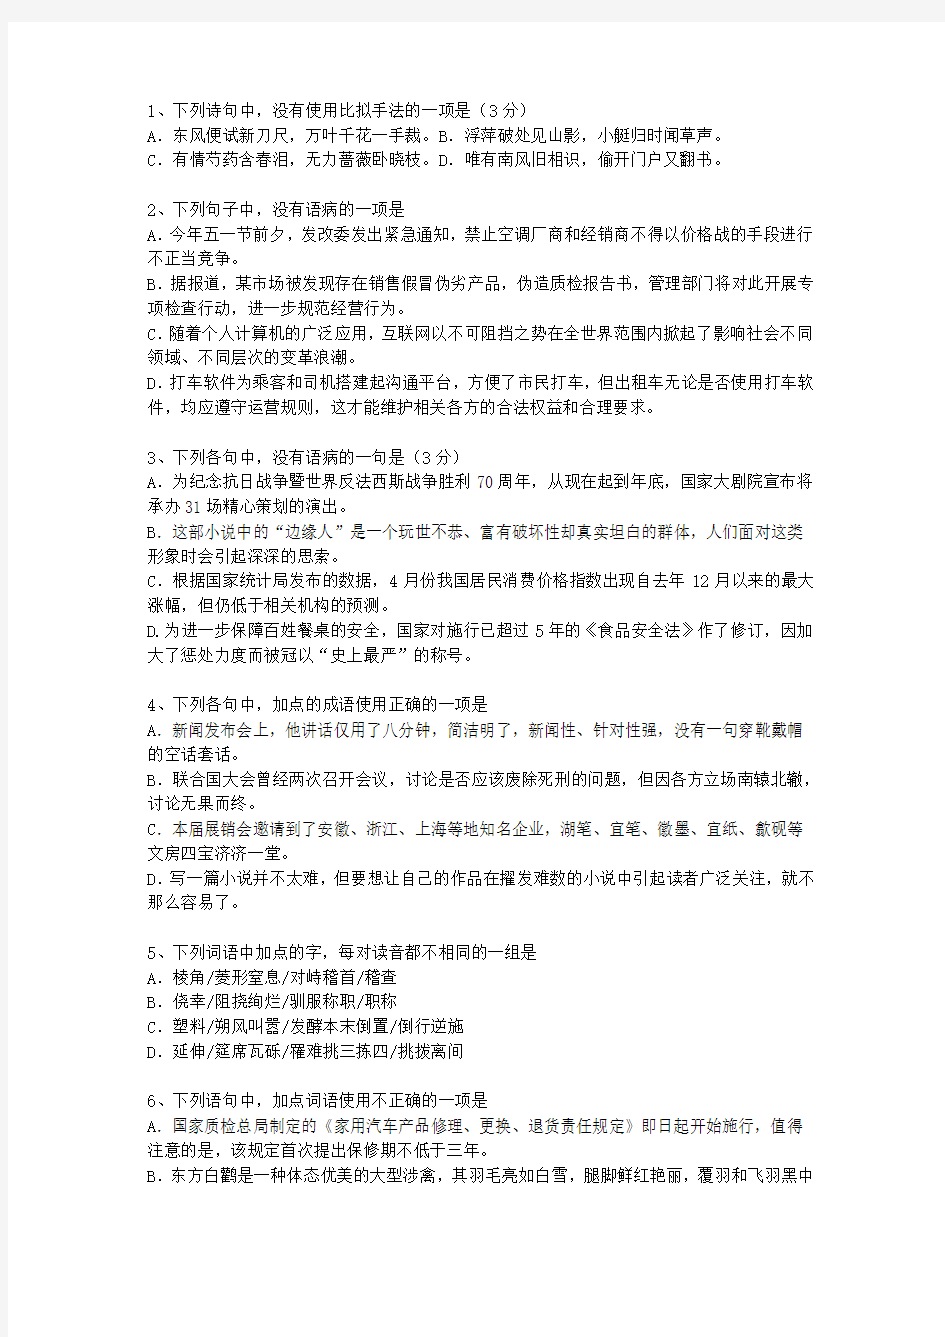 2015海南省高考历年语文试卷精选考试答题技巧